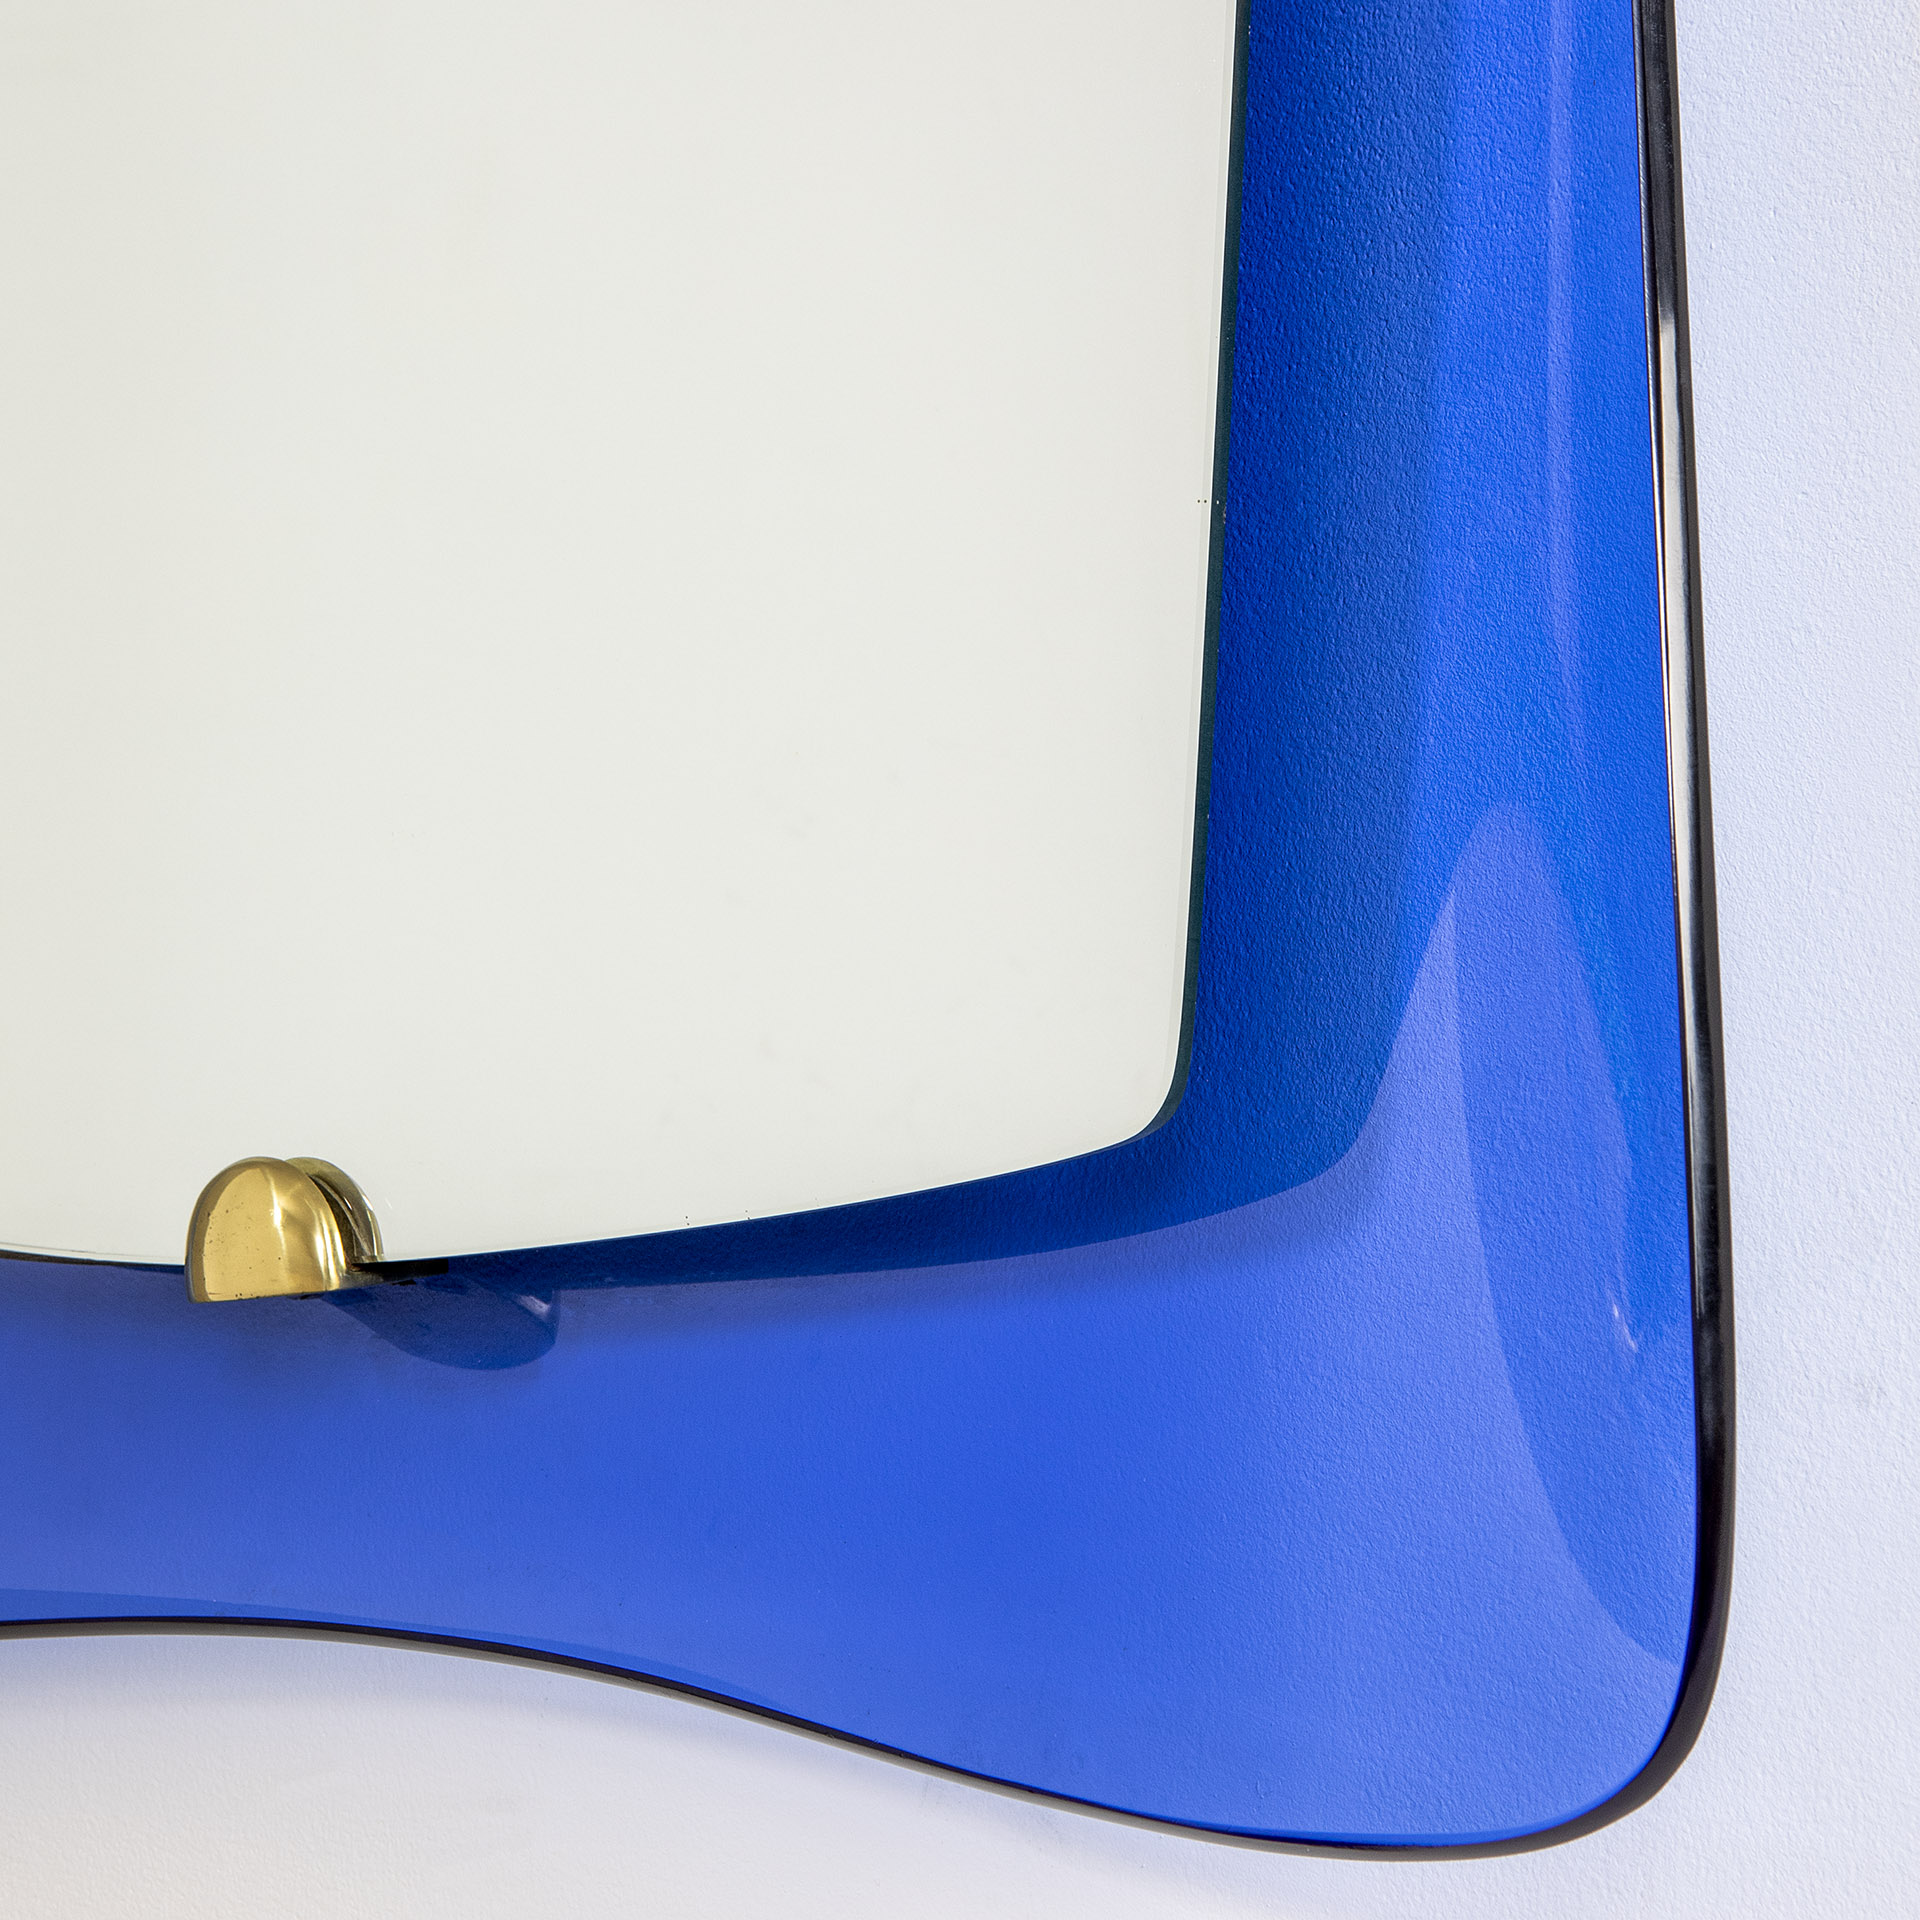 Specchio da muro di Cristal Art con cornice in vetro colorato blu